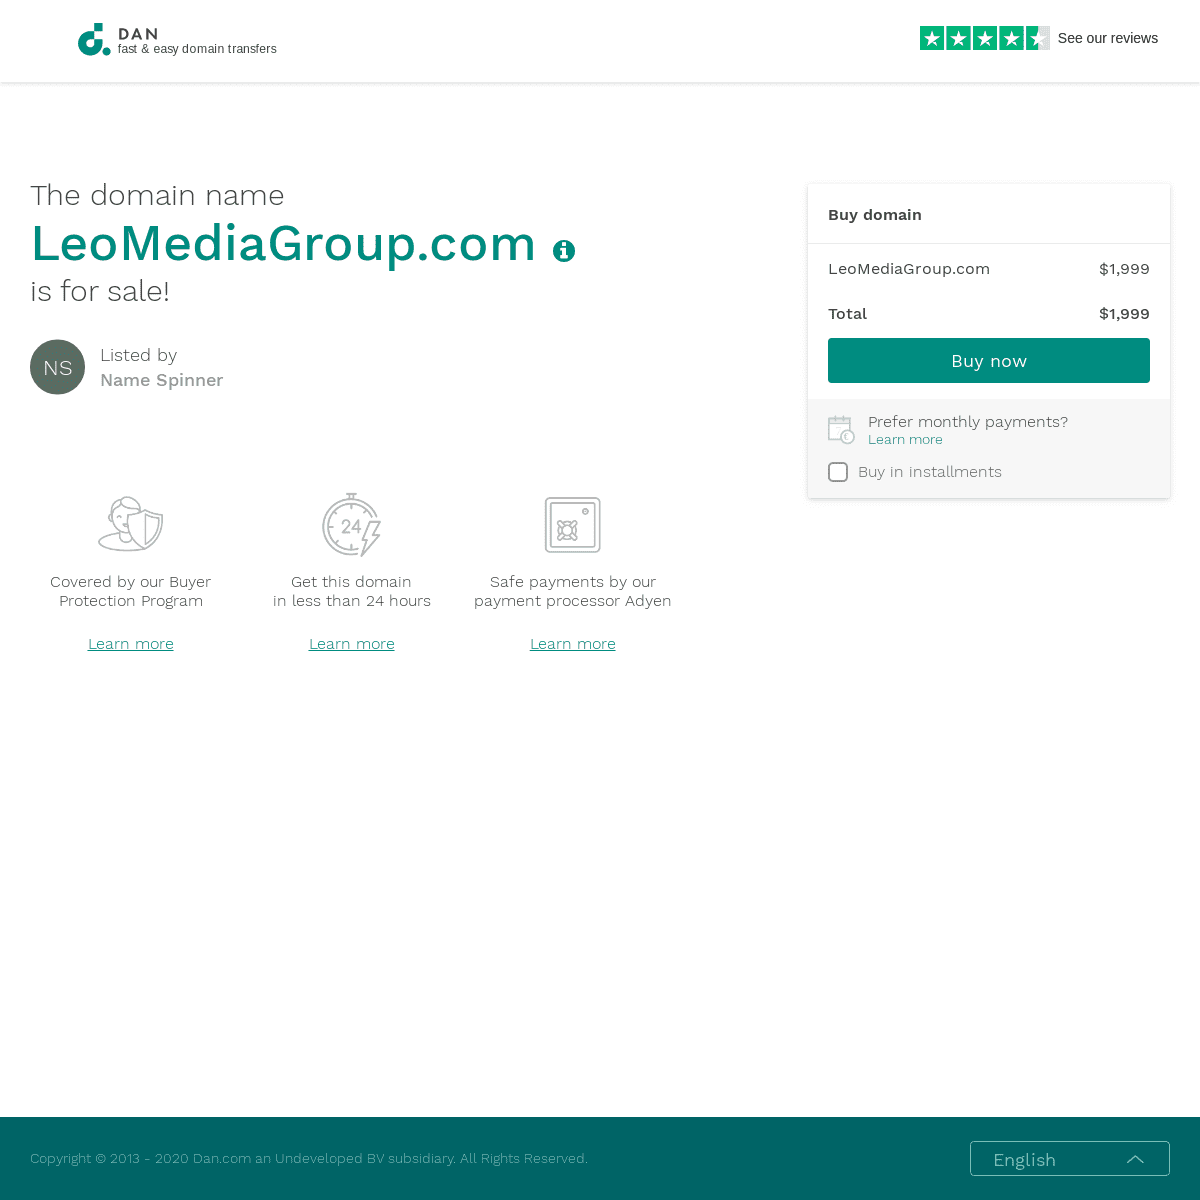 A complete backup of leomediagroup.com